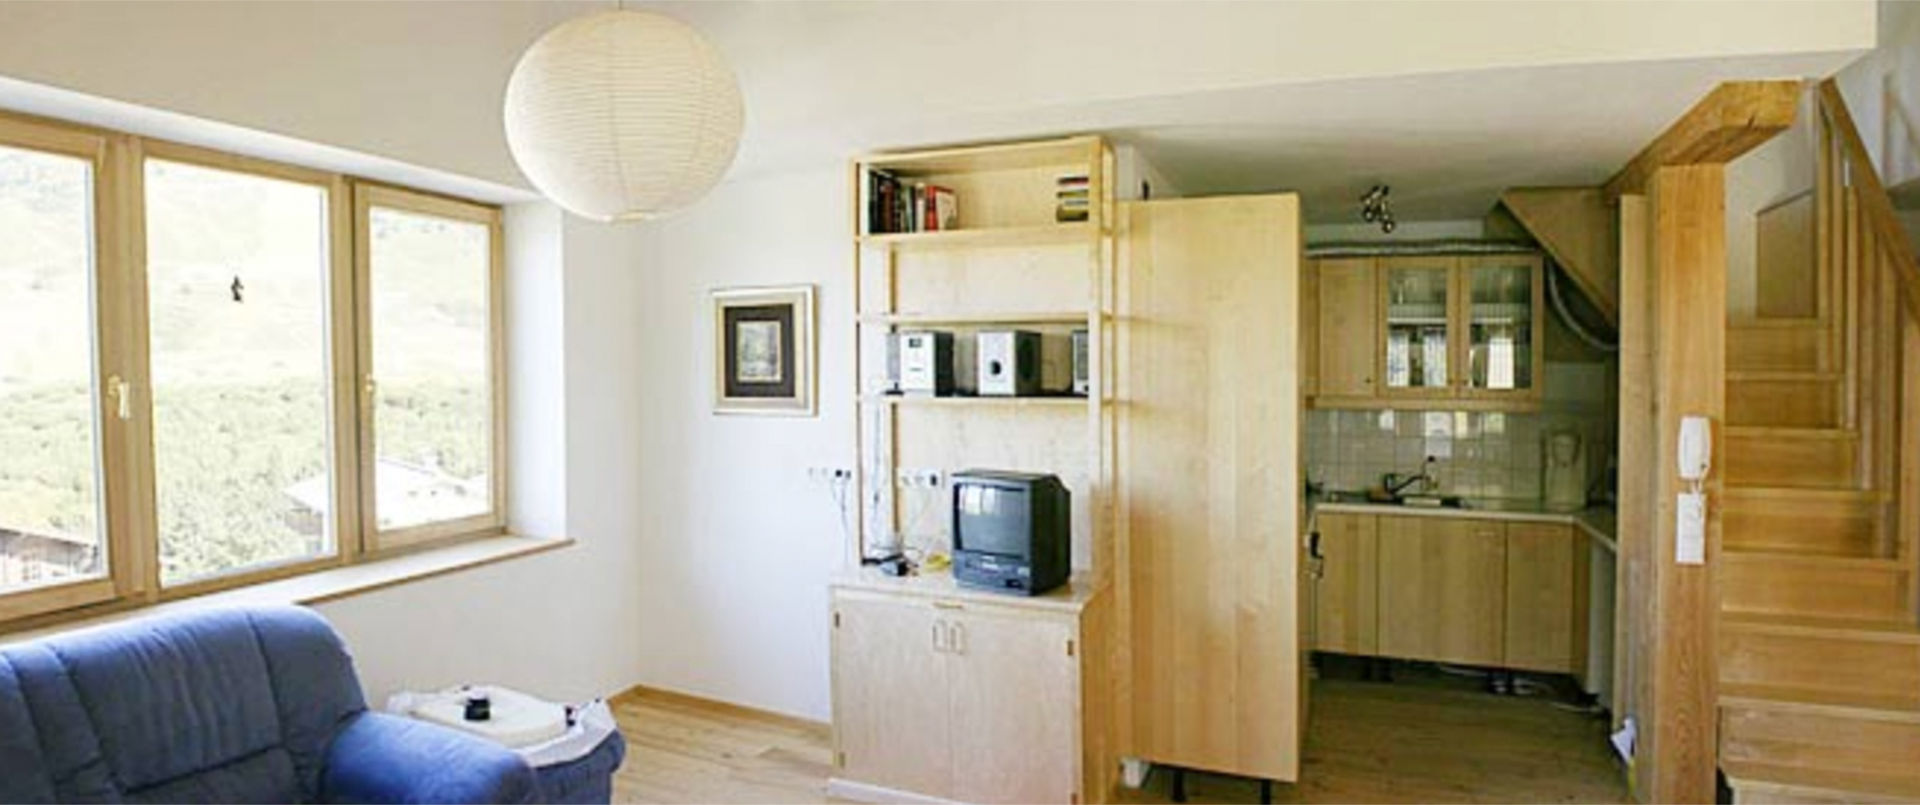 Vakantiehuis Meilinger in Obertauern – Appartement3 woongedeelte met keuken en maisonnettetrap